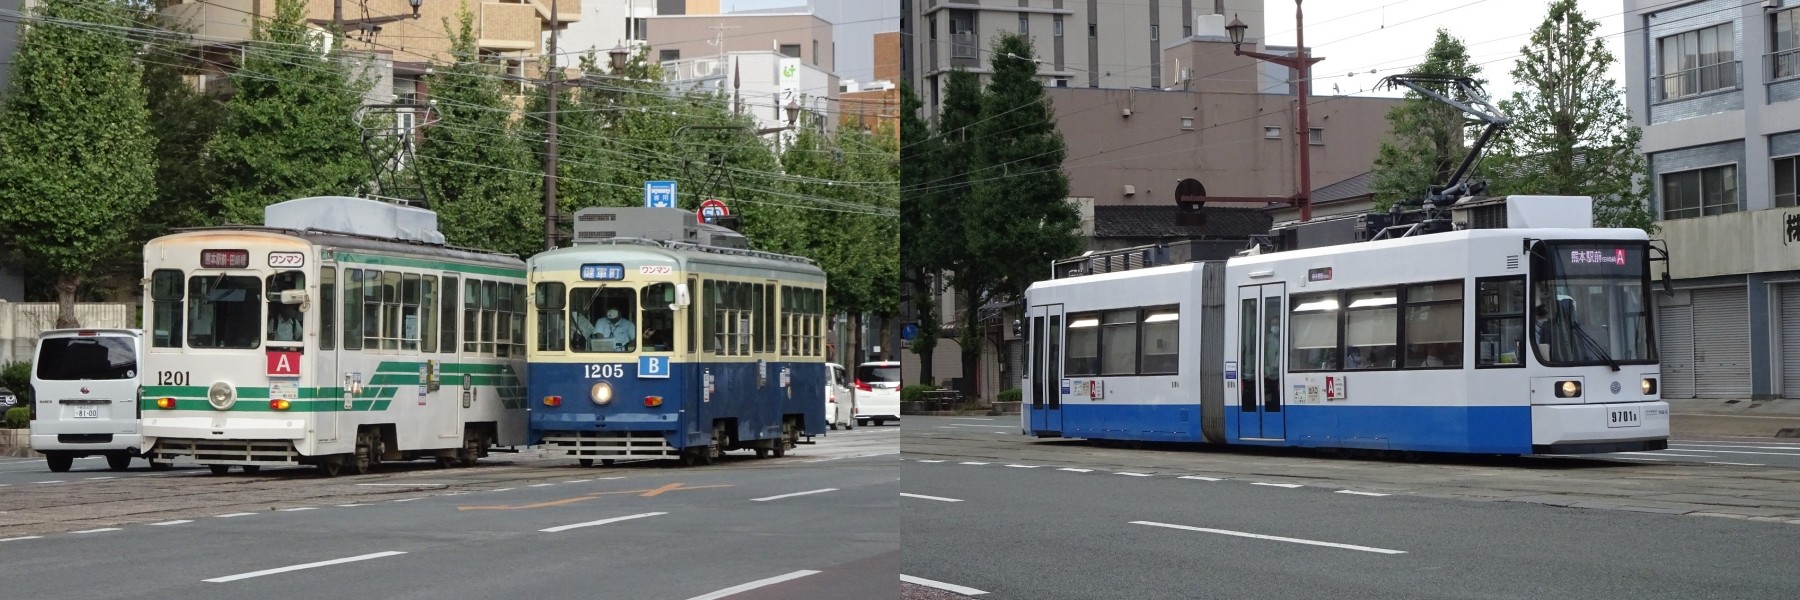 Tram chạy trong thành phố Kumamoto, Kyushu - Tram Kumamoto